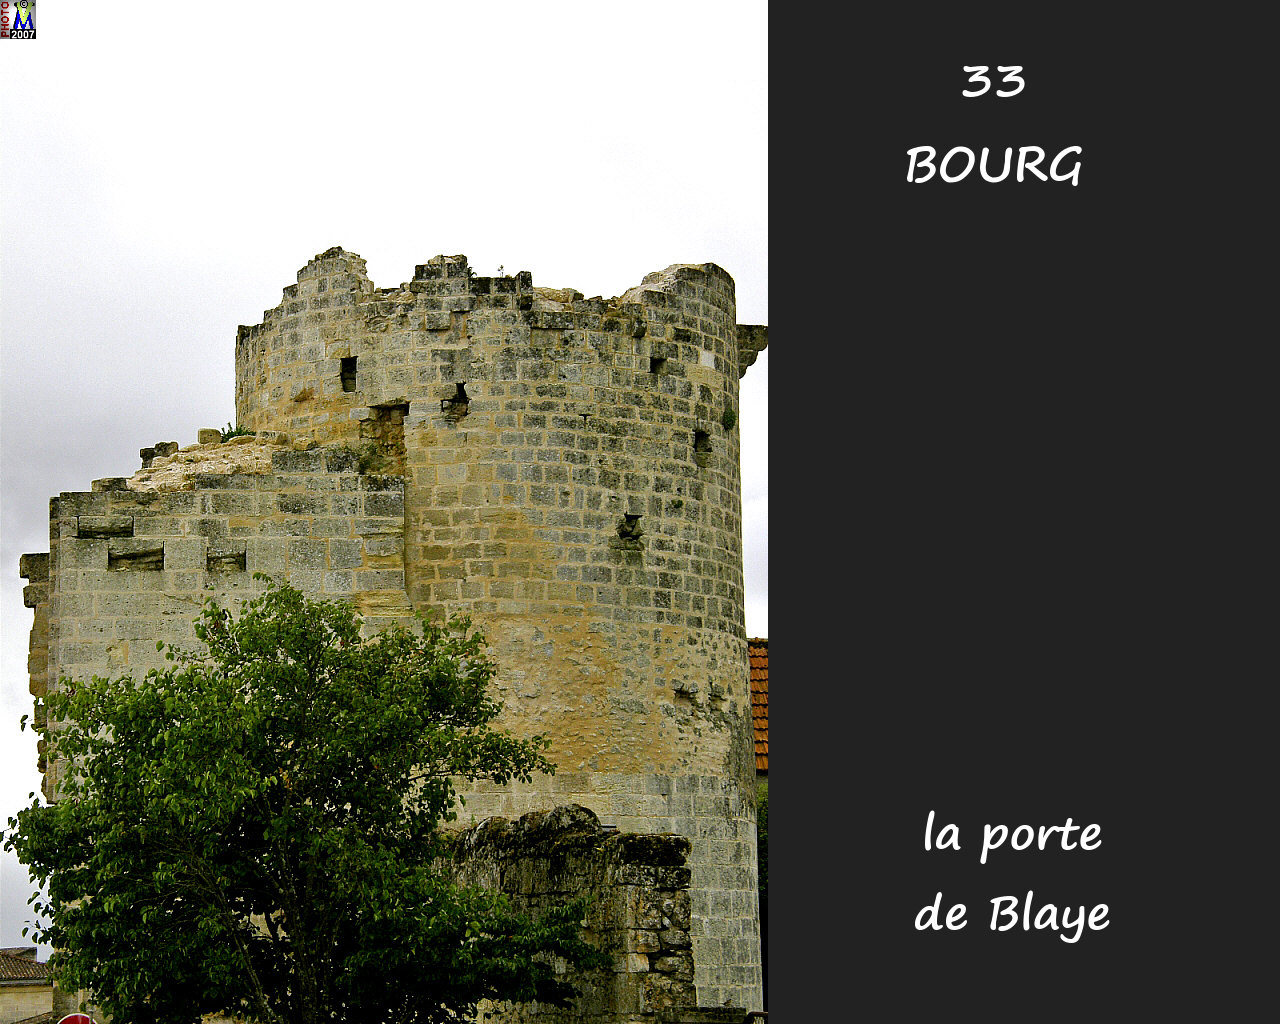 33BOURG_porte-Blaye_102.jpg